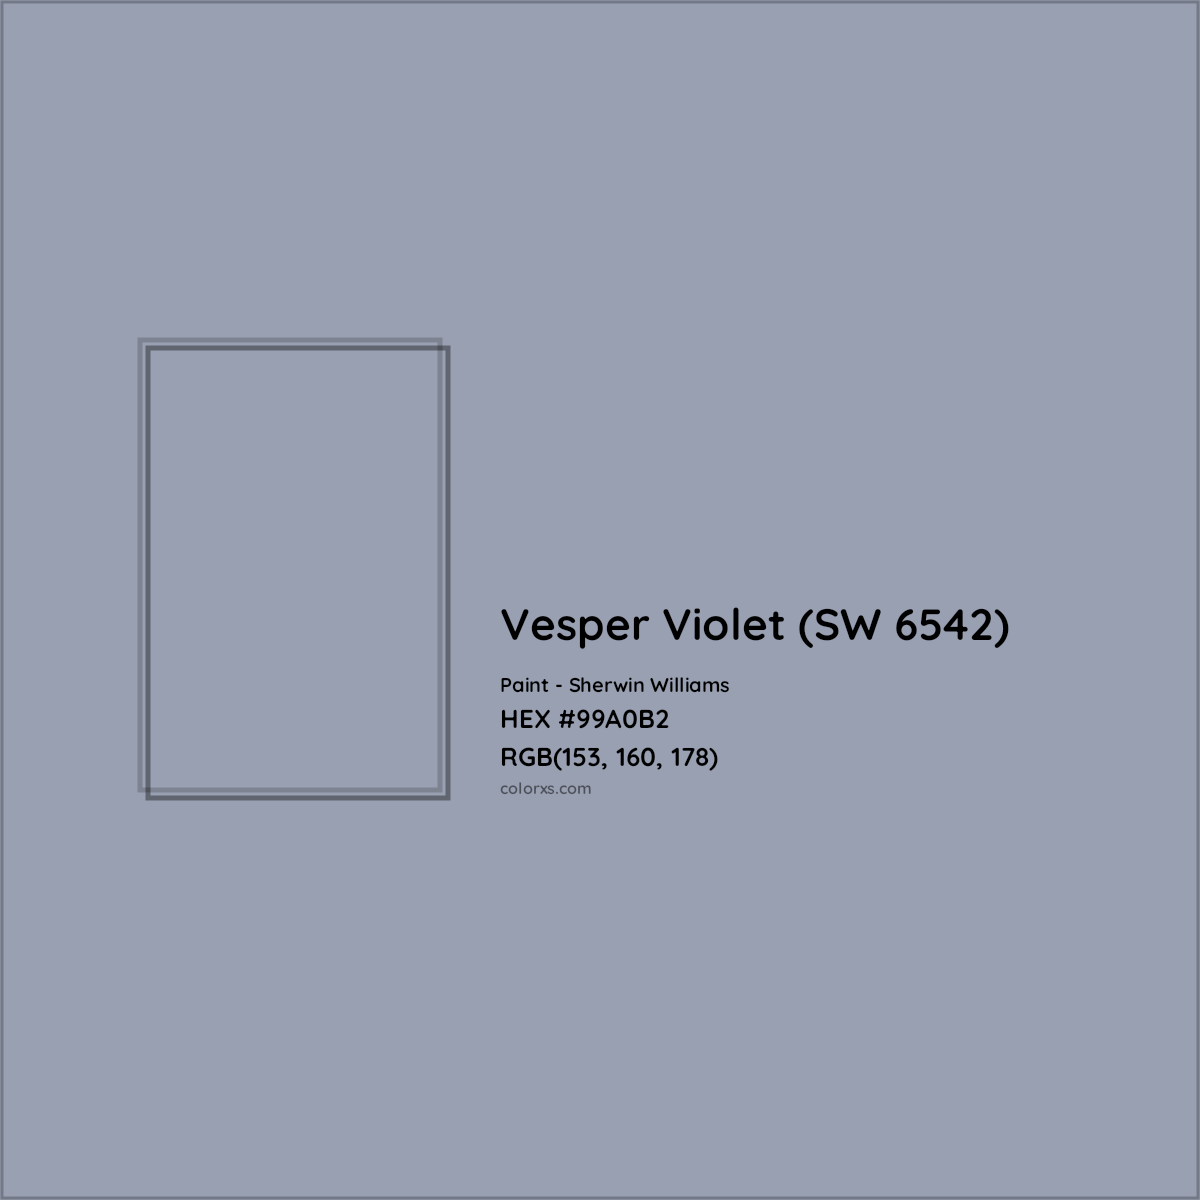 HEX #99A0B2 Vesper Violet (SW 6542) Paint Sherwin Williams - Color Code